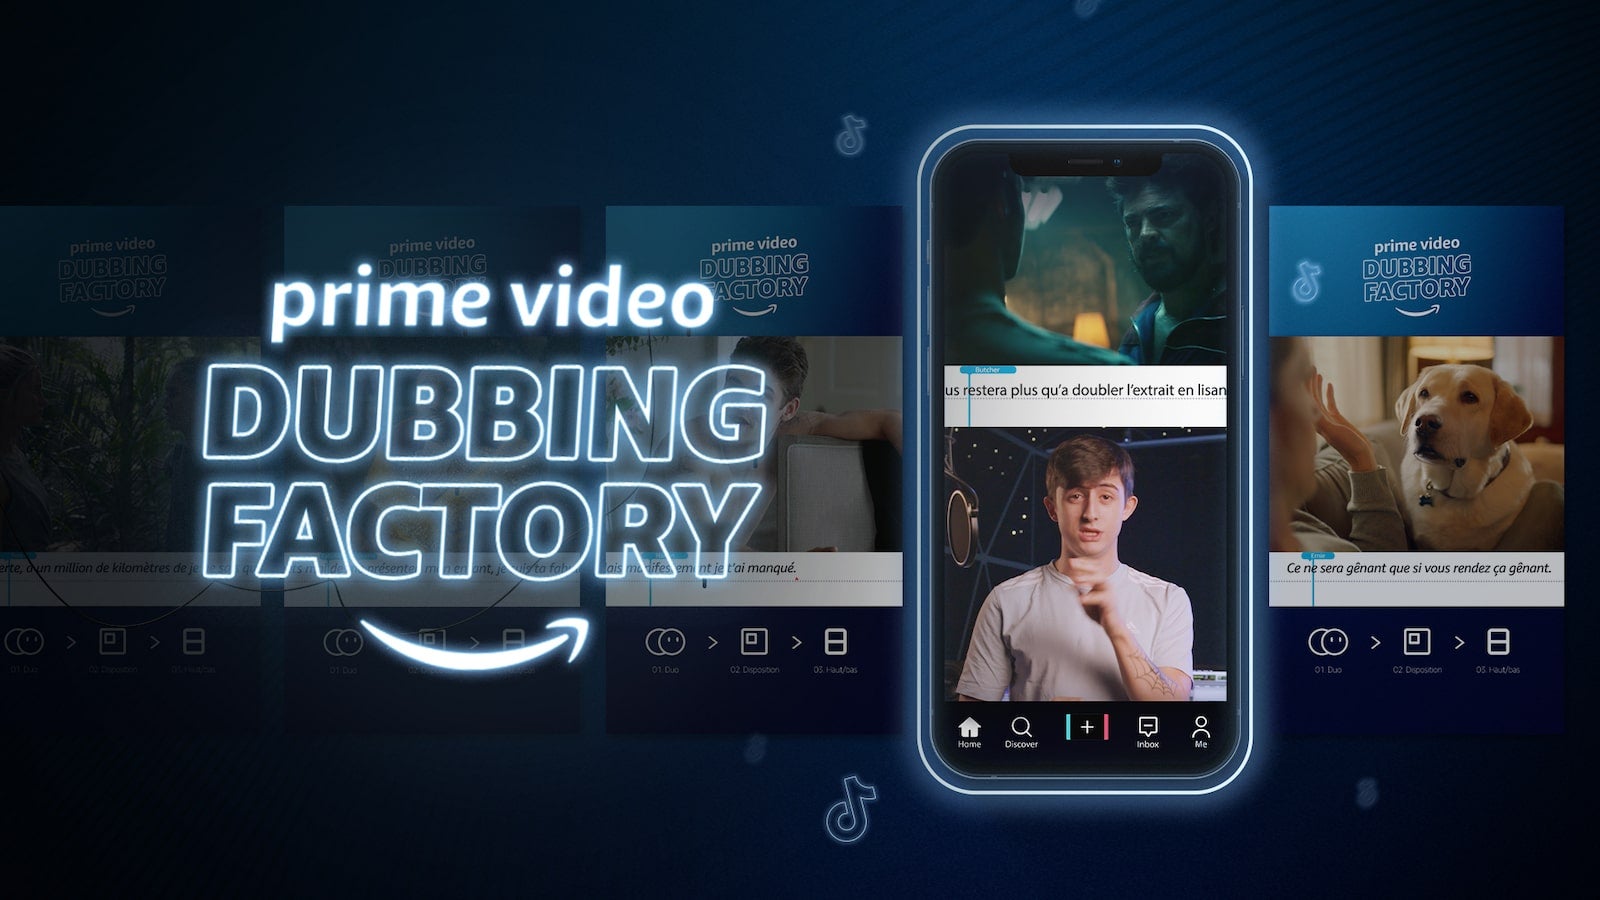 Arrêtez tout : Prime Video lance le challenge #DubbingFactory sur TikTok pour recruter une nouvelle voix off